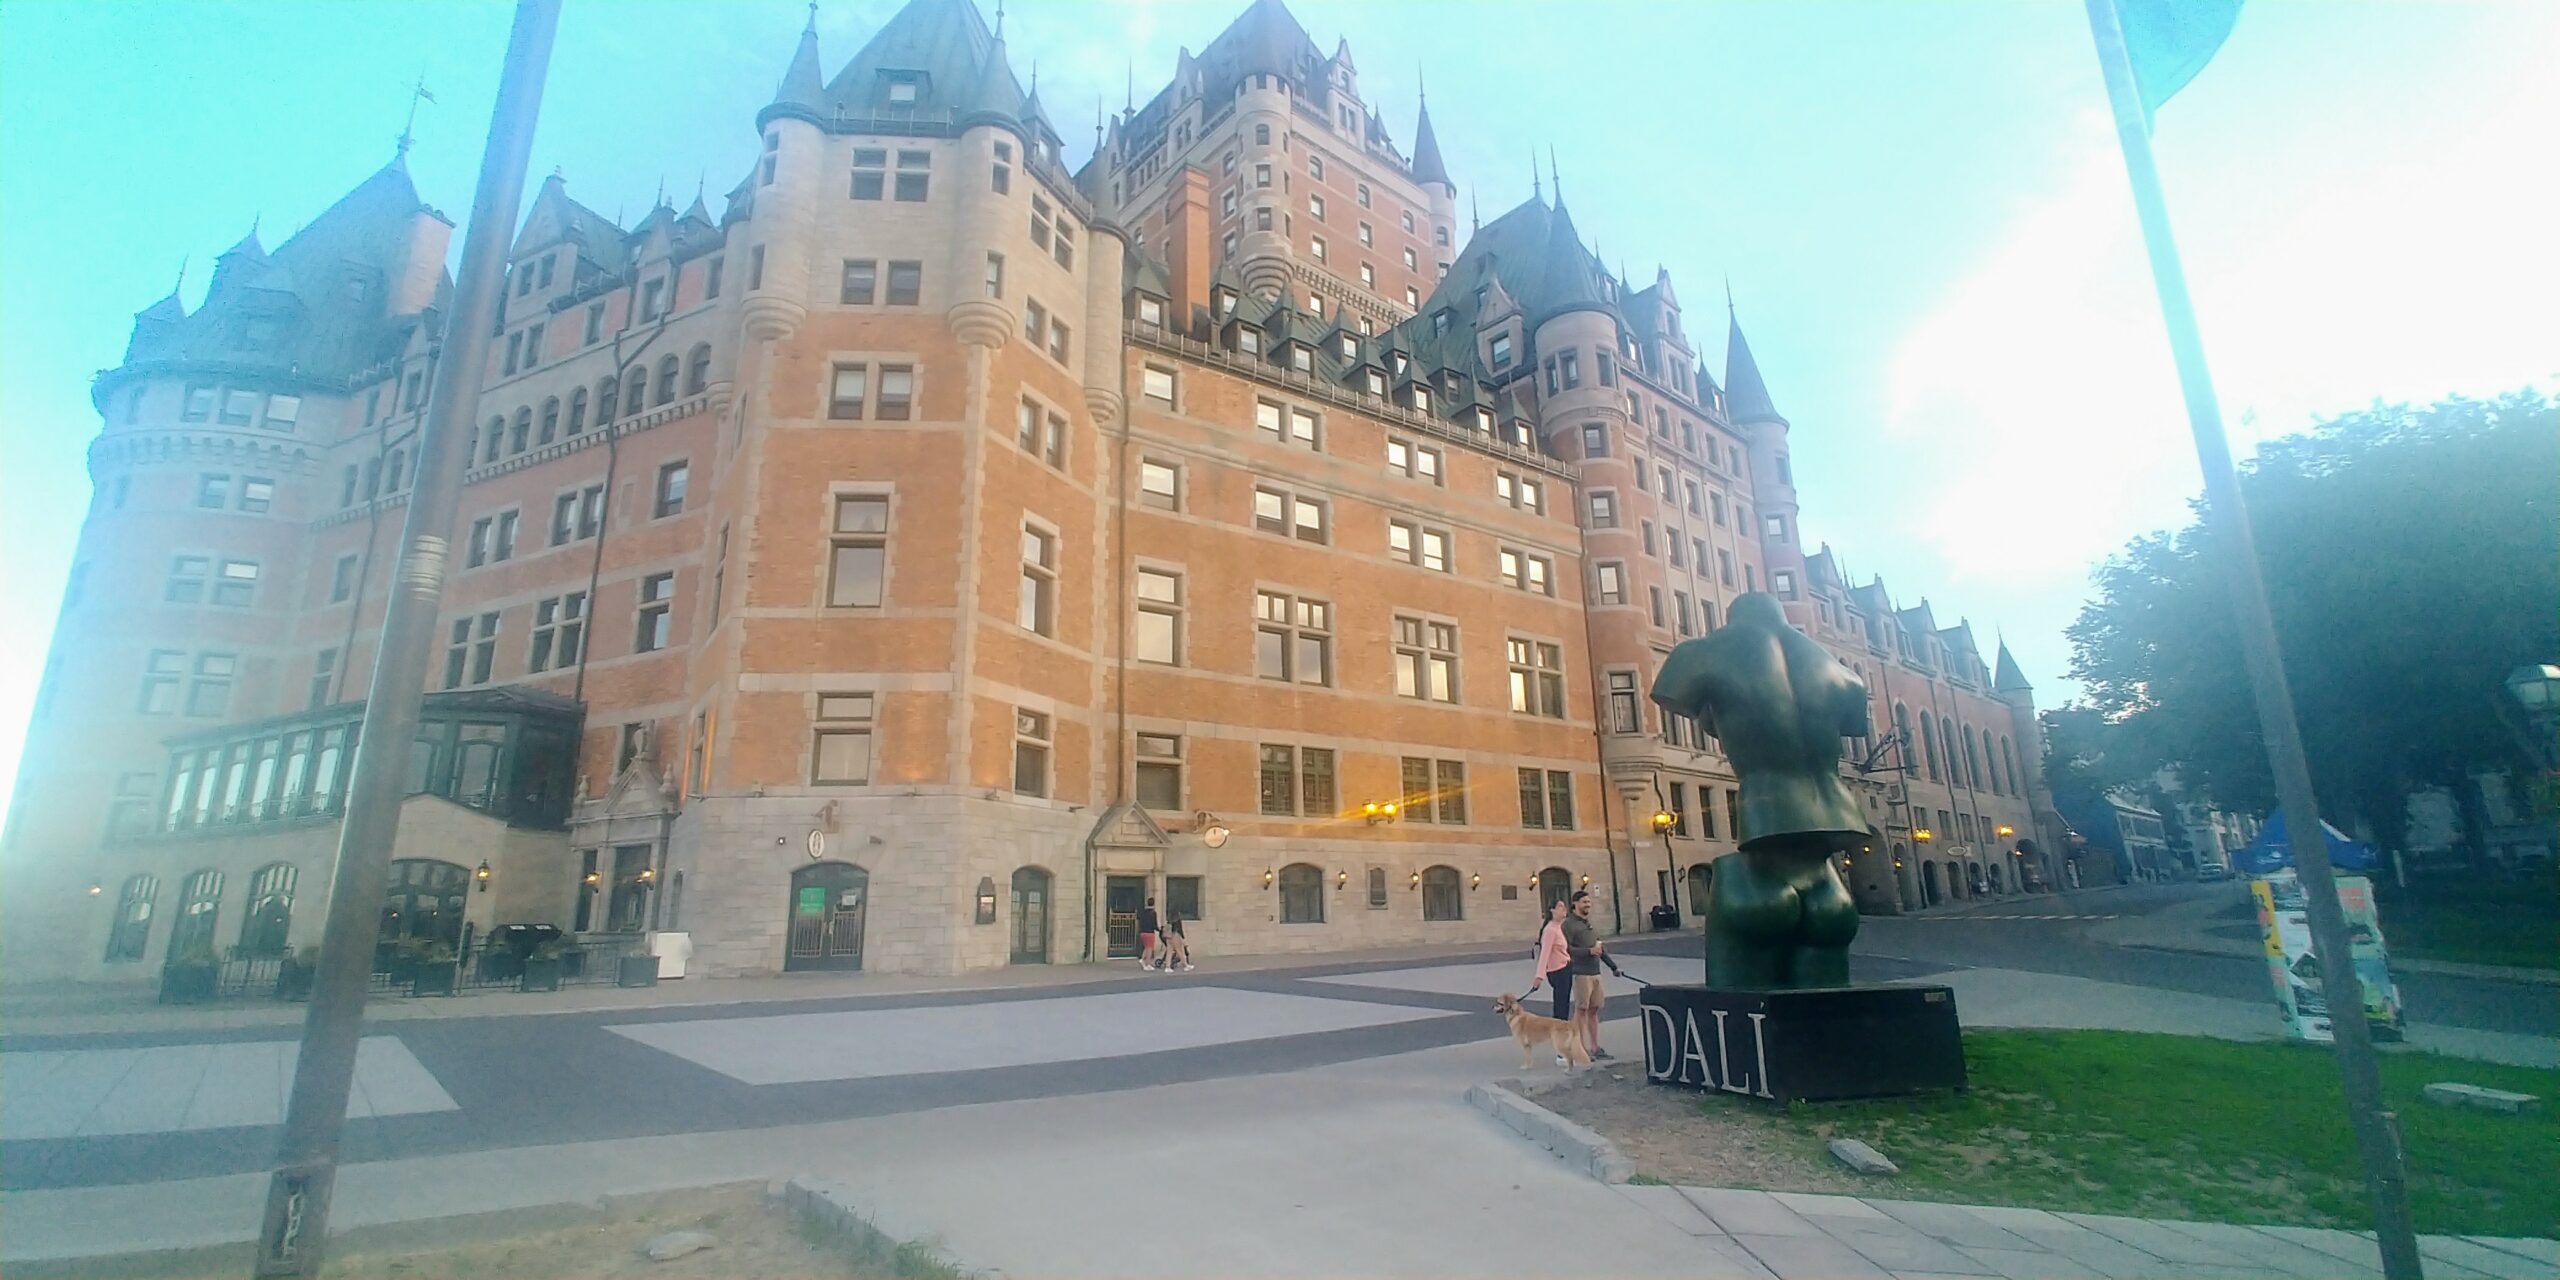 Château Frontenac à Québec